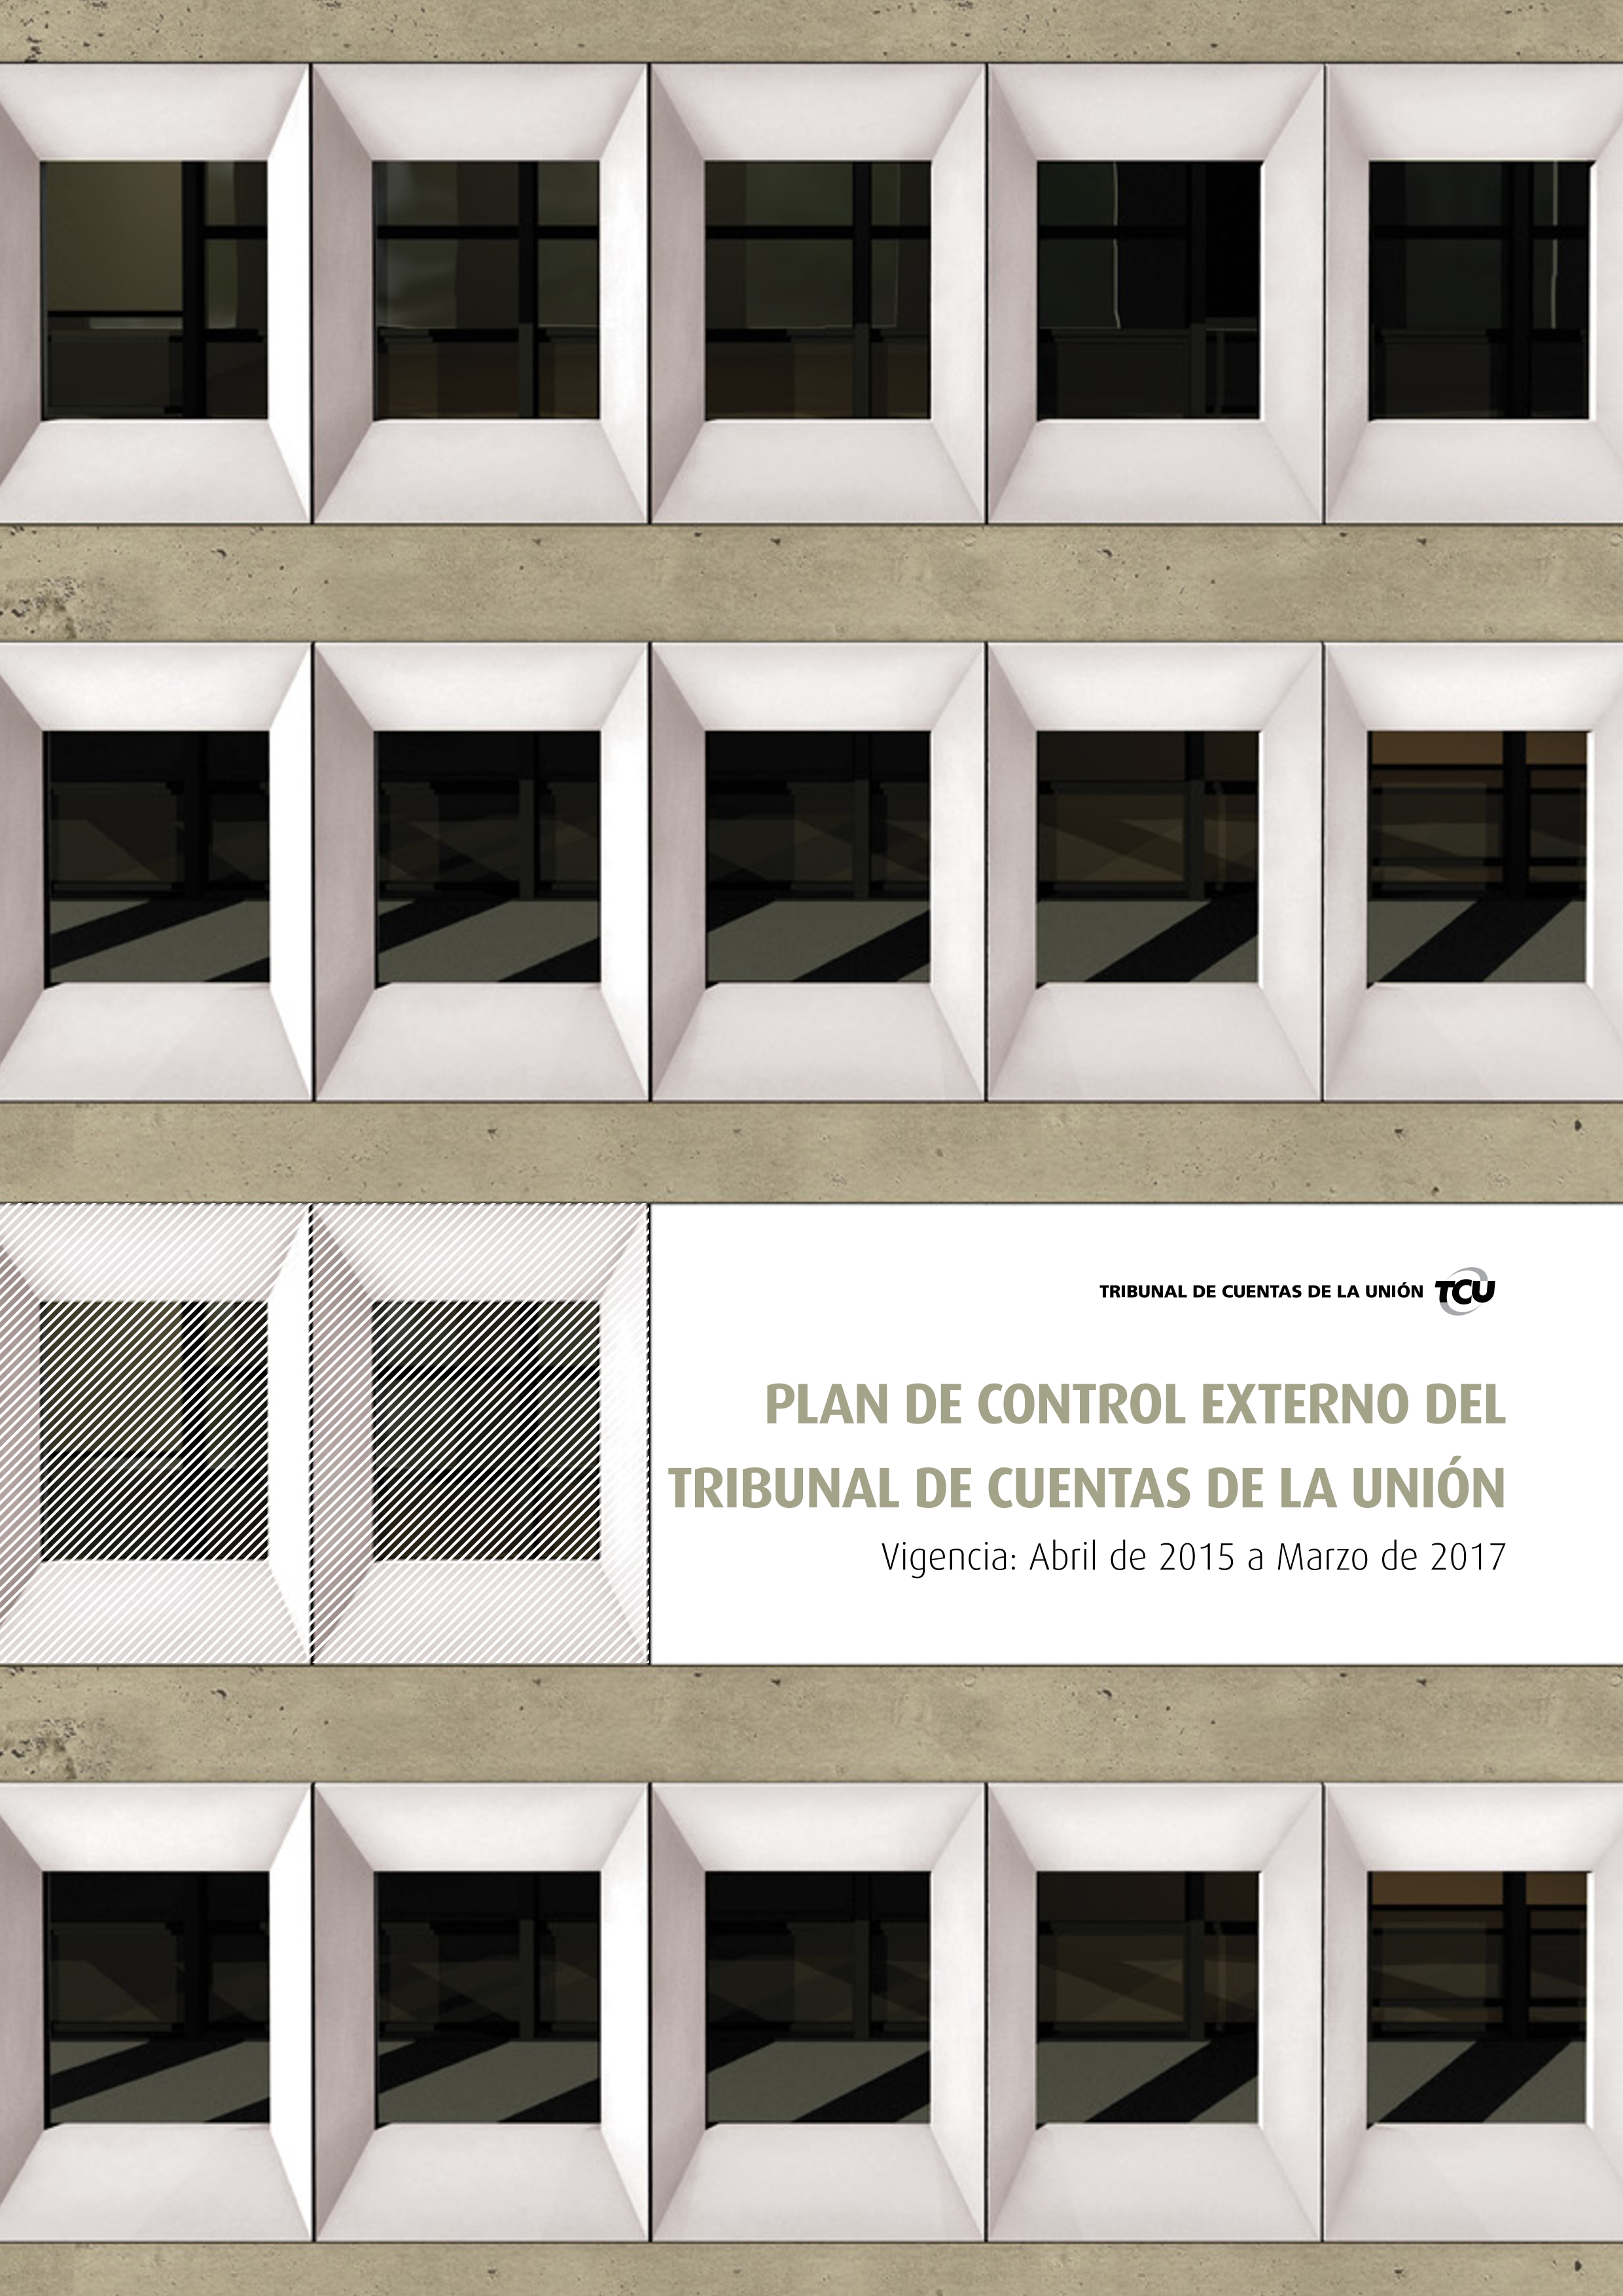 plano_controle_externo_tcu_abril_2015_marco_2017_espanhol.png